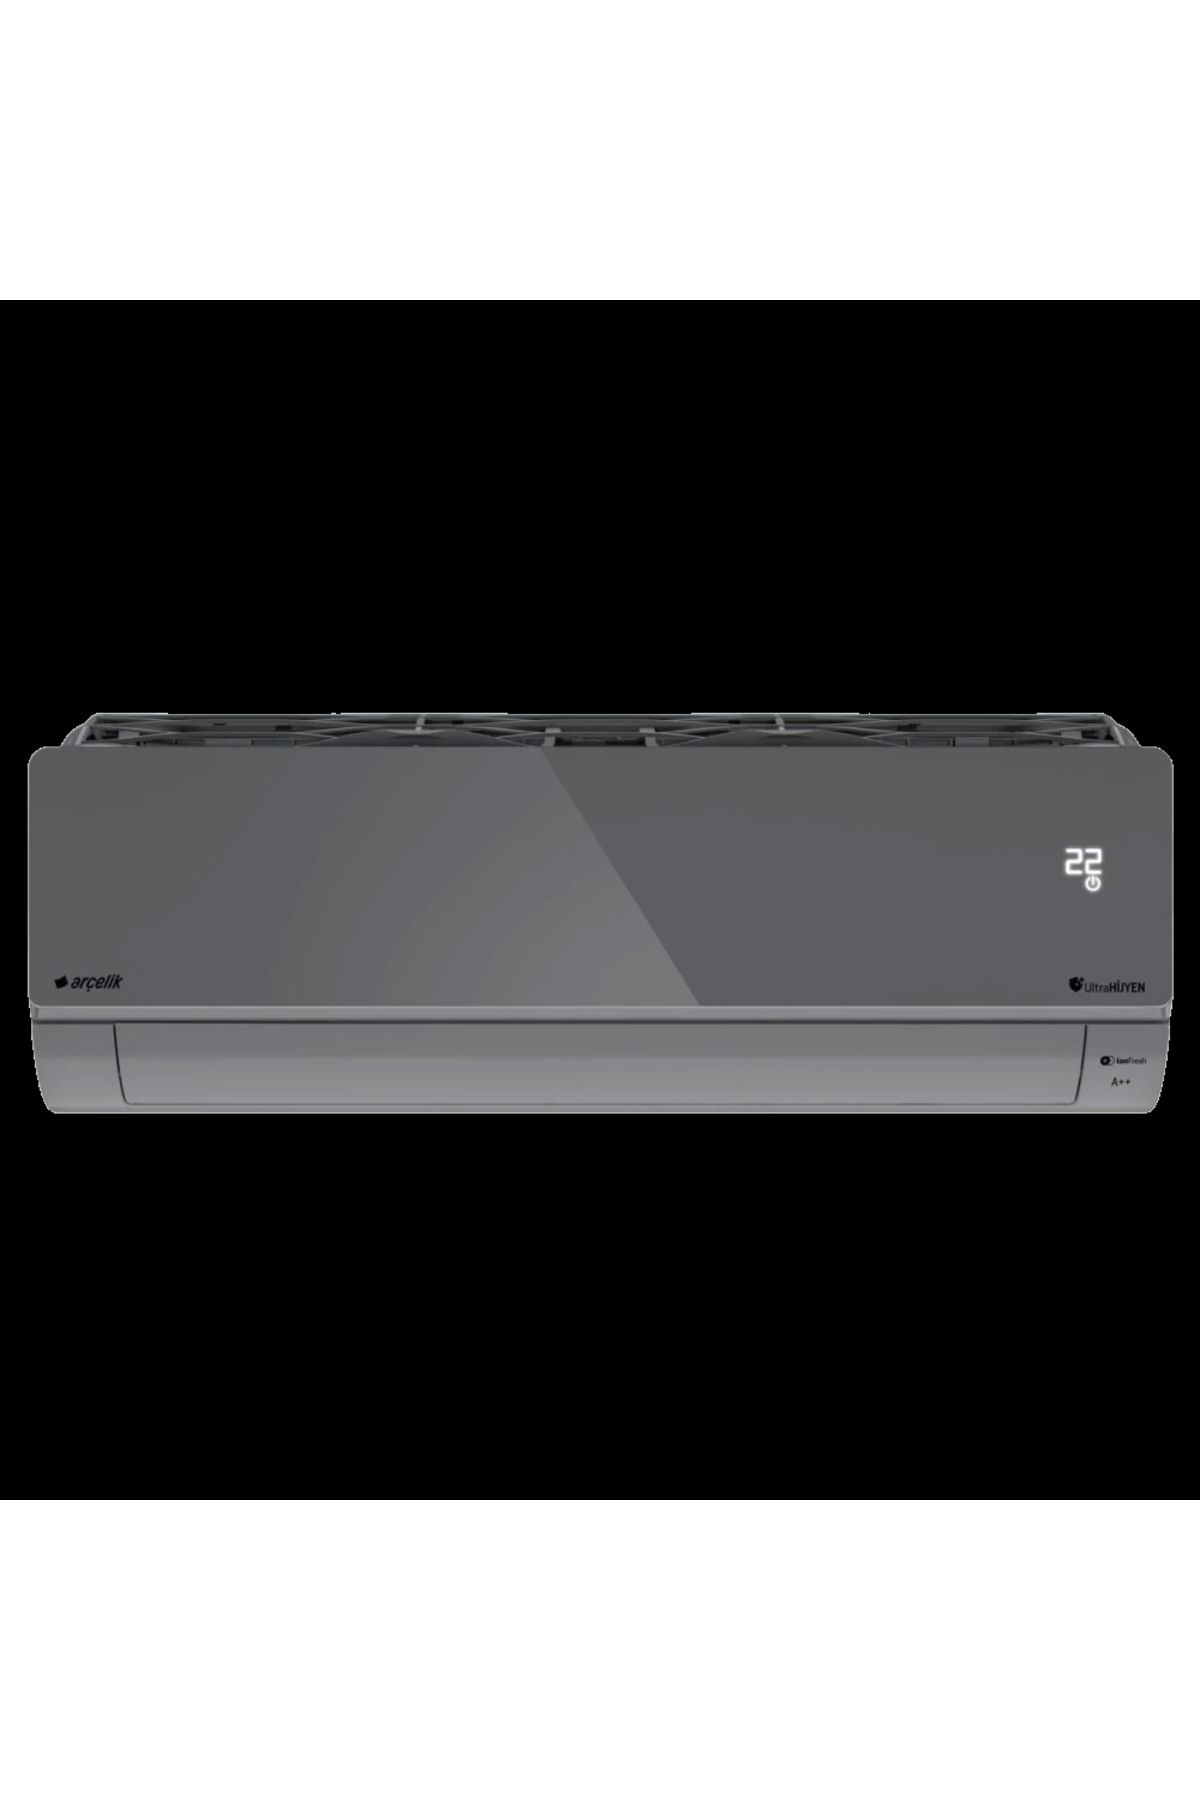 Arçelik 24465 HP Ultra Hijyen Plus Silver Inverter Klima 24.000 Btu/h A++ Sınıfı R32 Gazlı